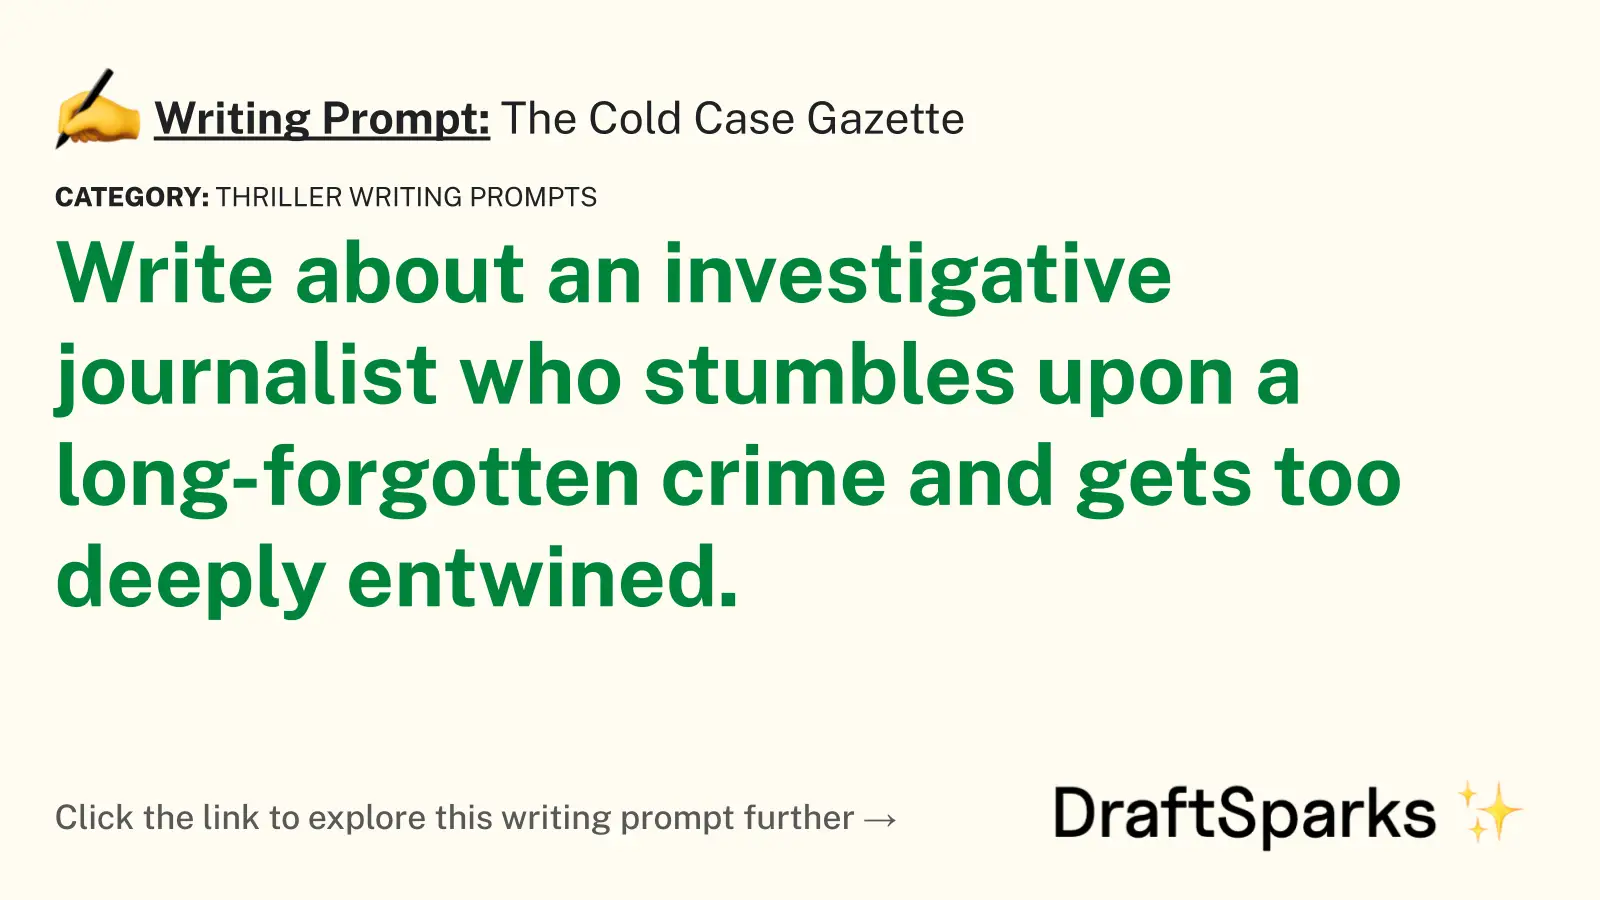 The Cold Case Gazette